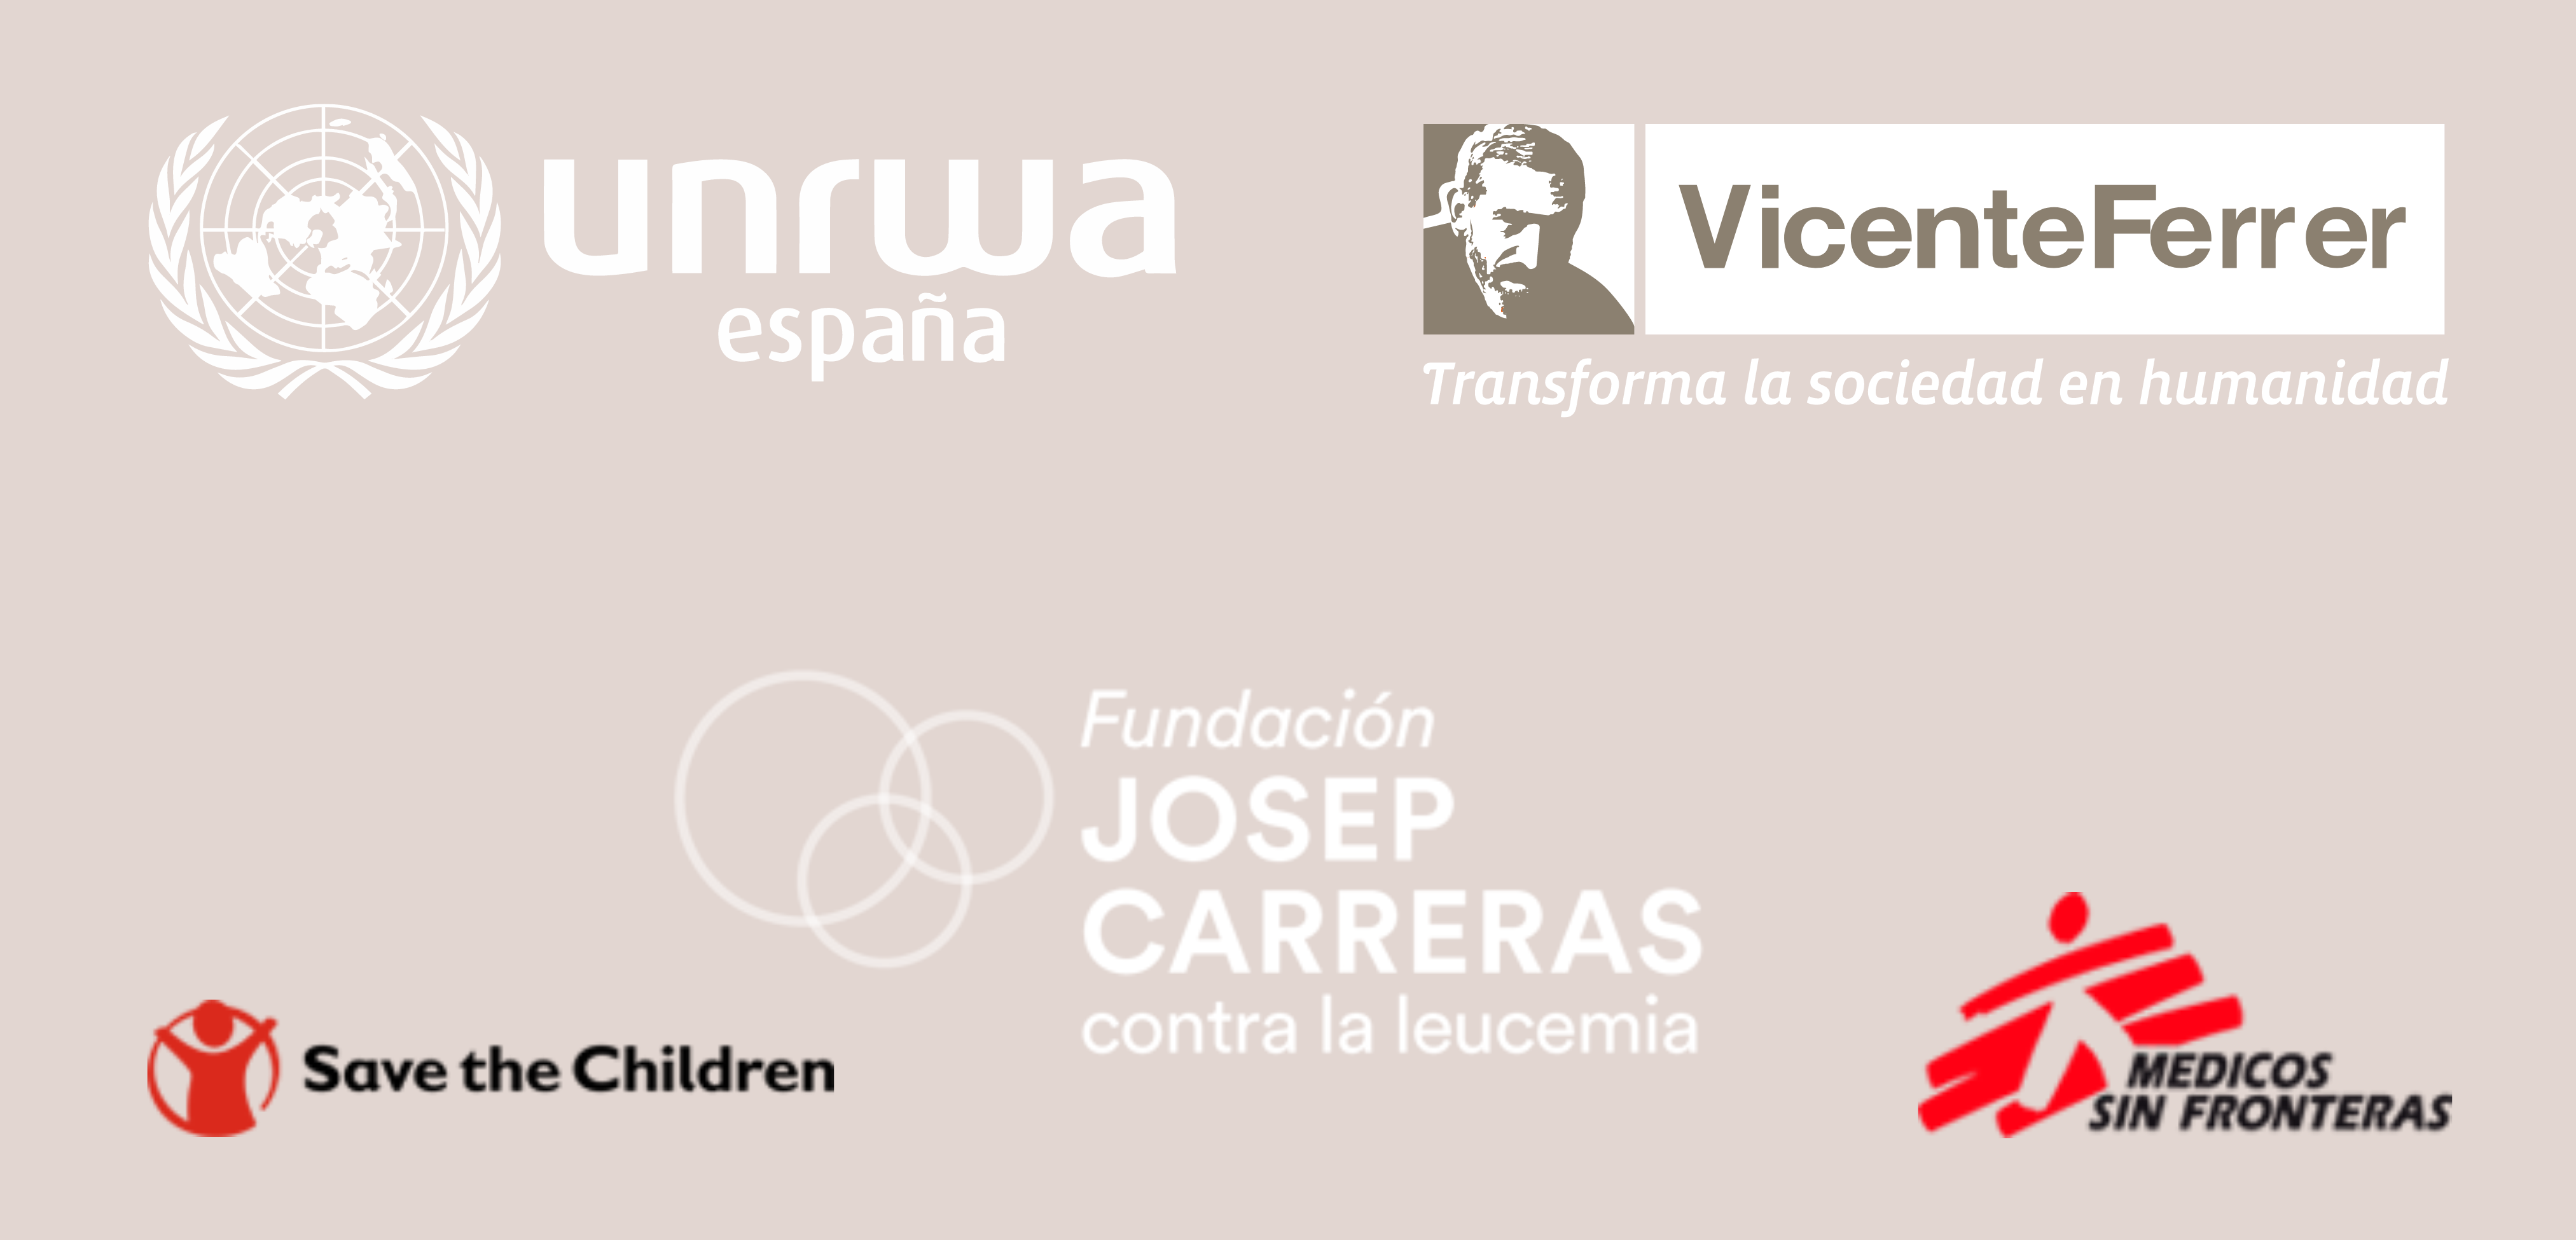 Colaboramos con la Asociacion Vicente Ferrer, Unrwa, Fundacion Josep Carreras, Save the Children y Médicos sin fronteras